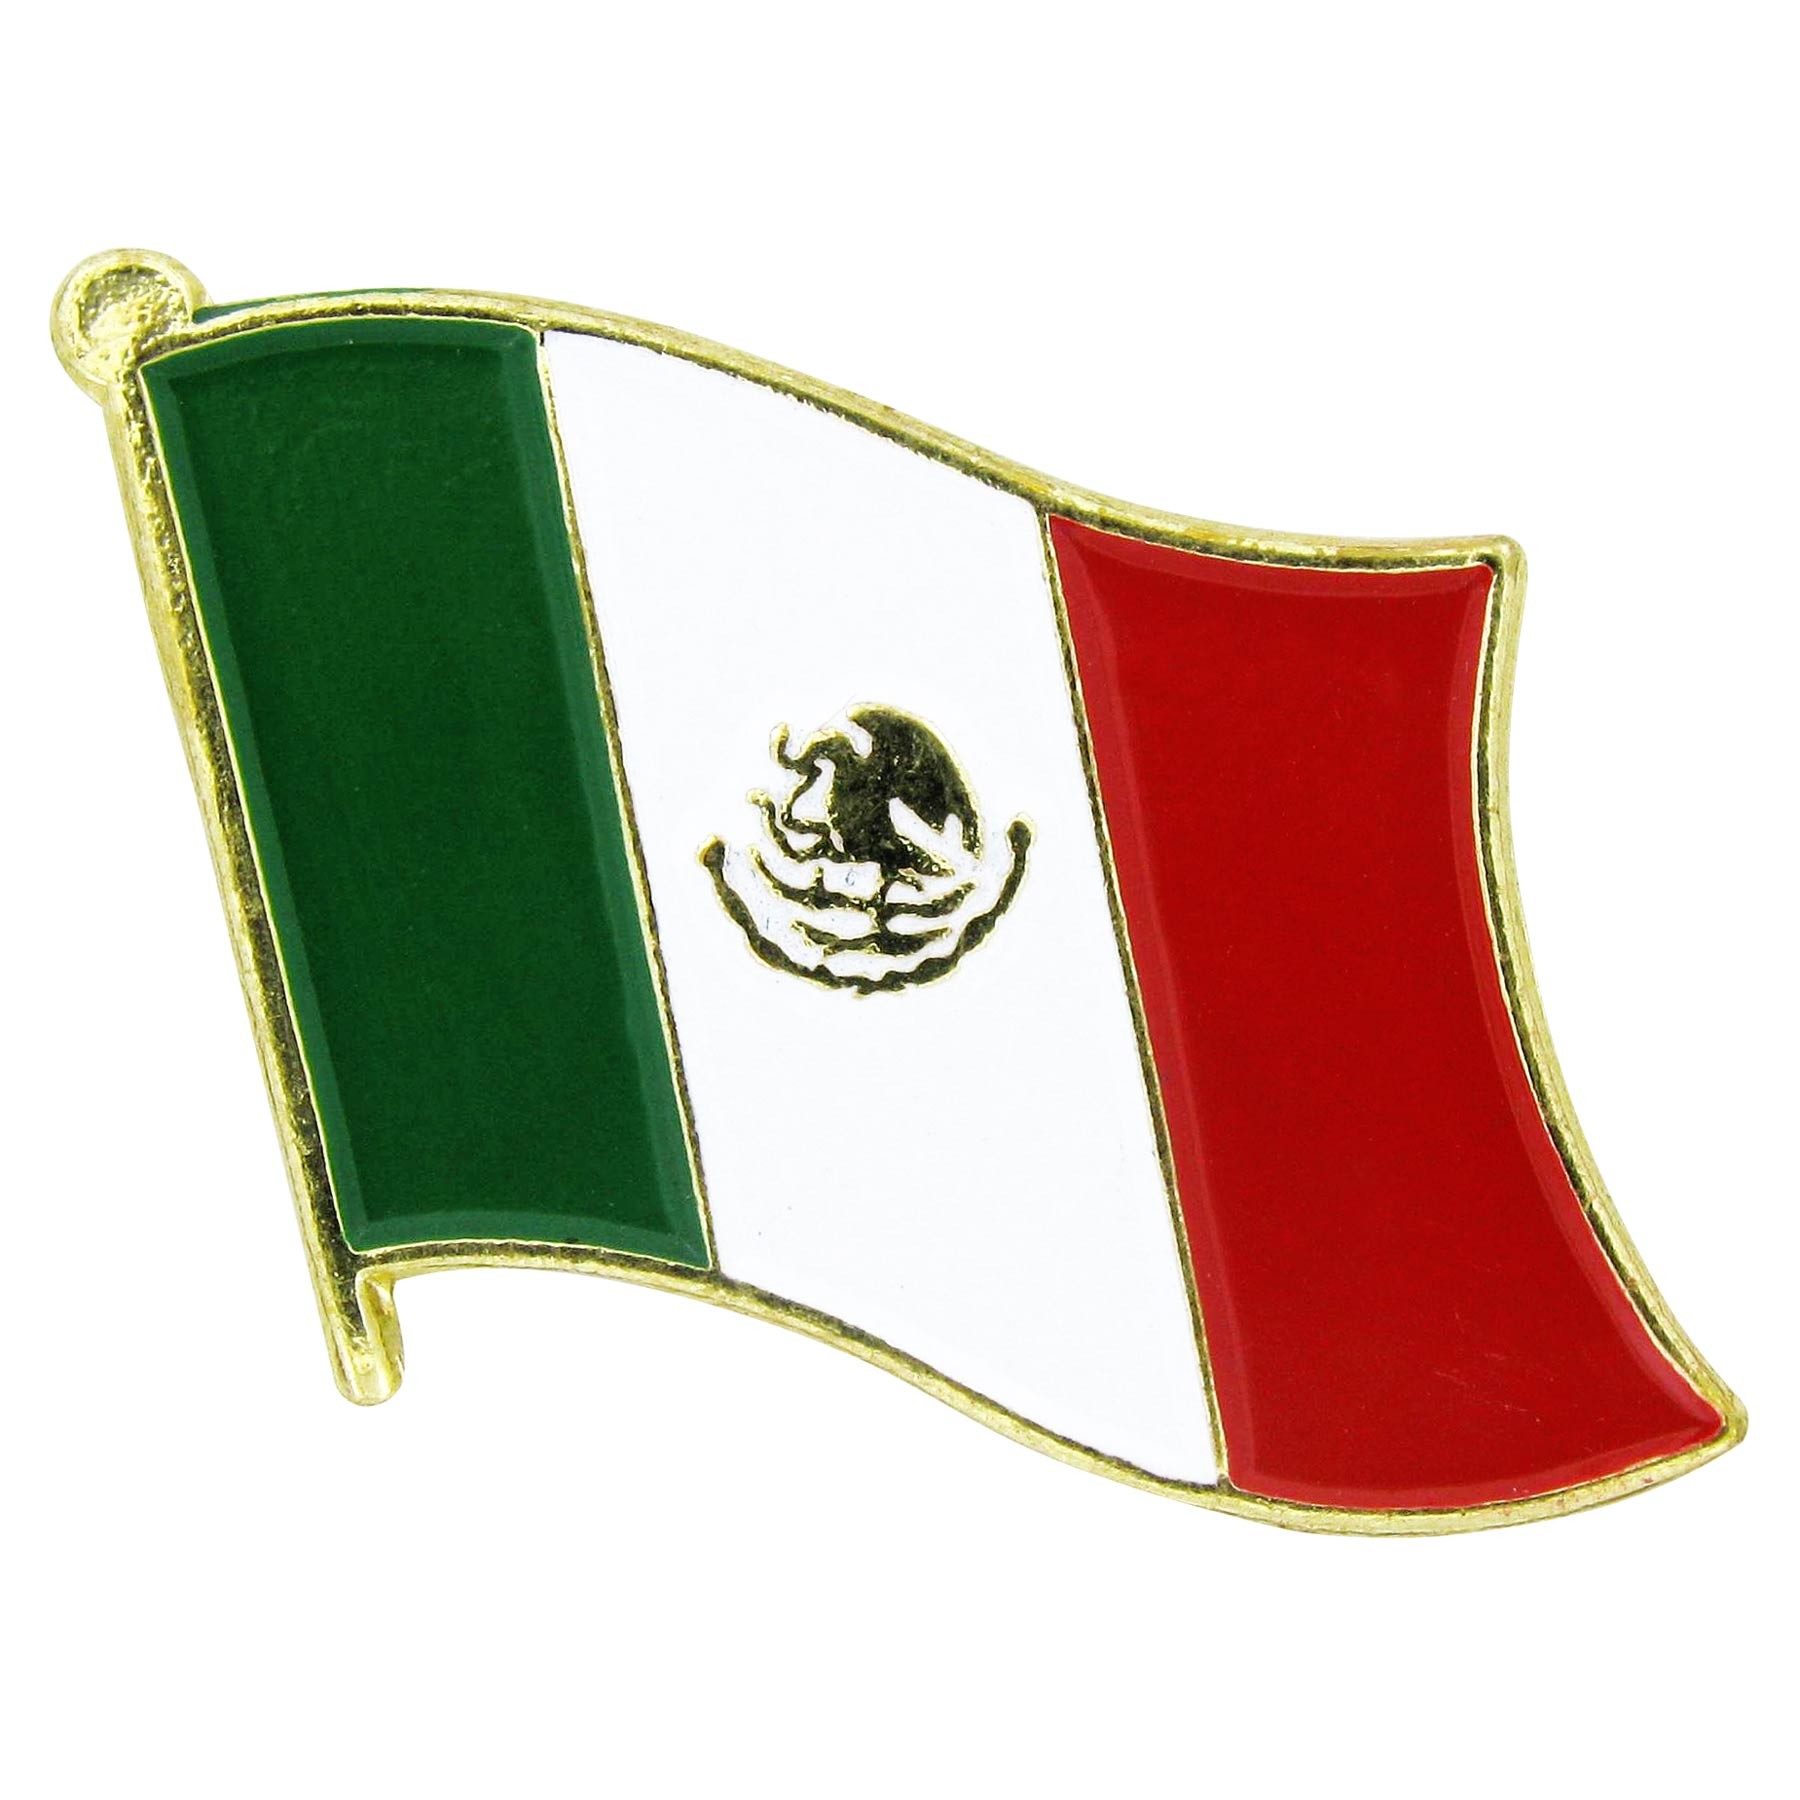 Mexico (Mexican) Flag - Flag of Mexico